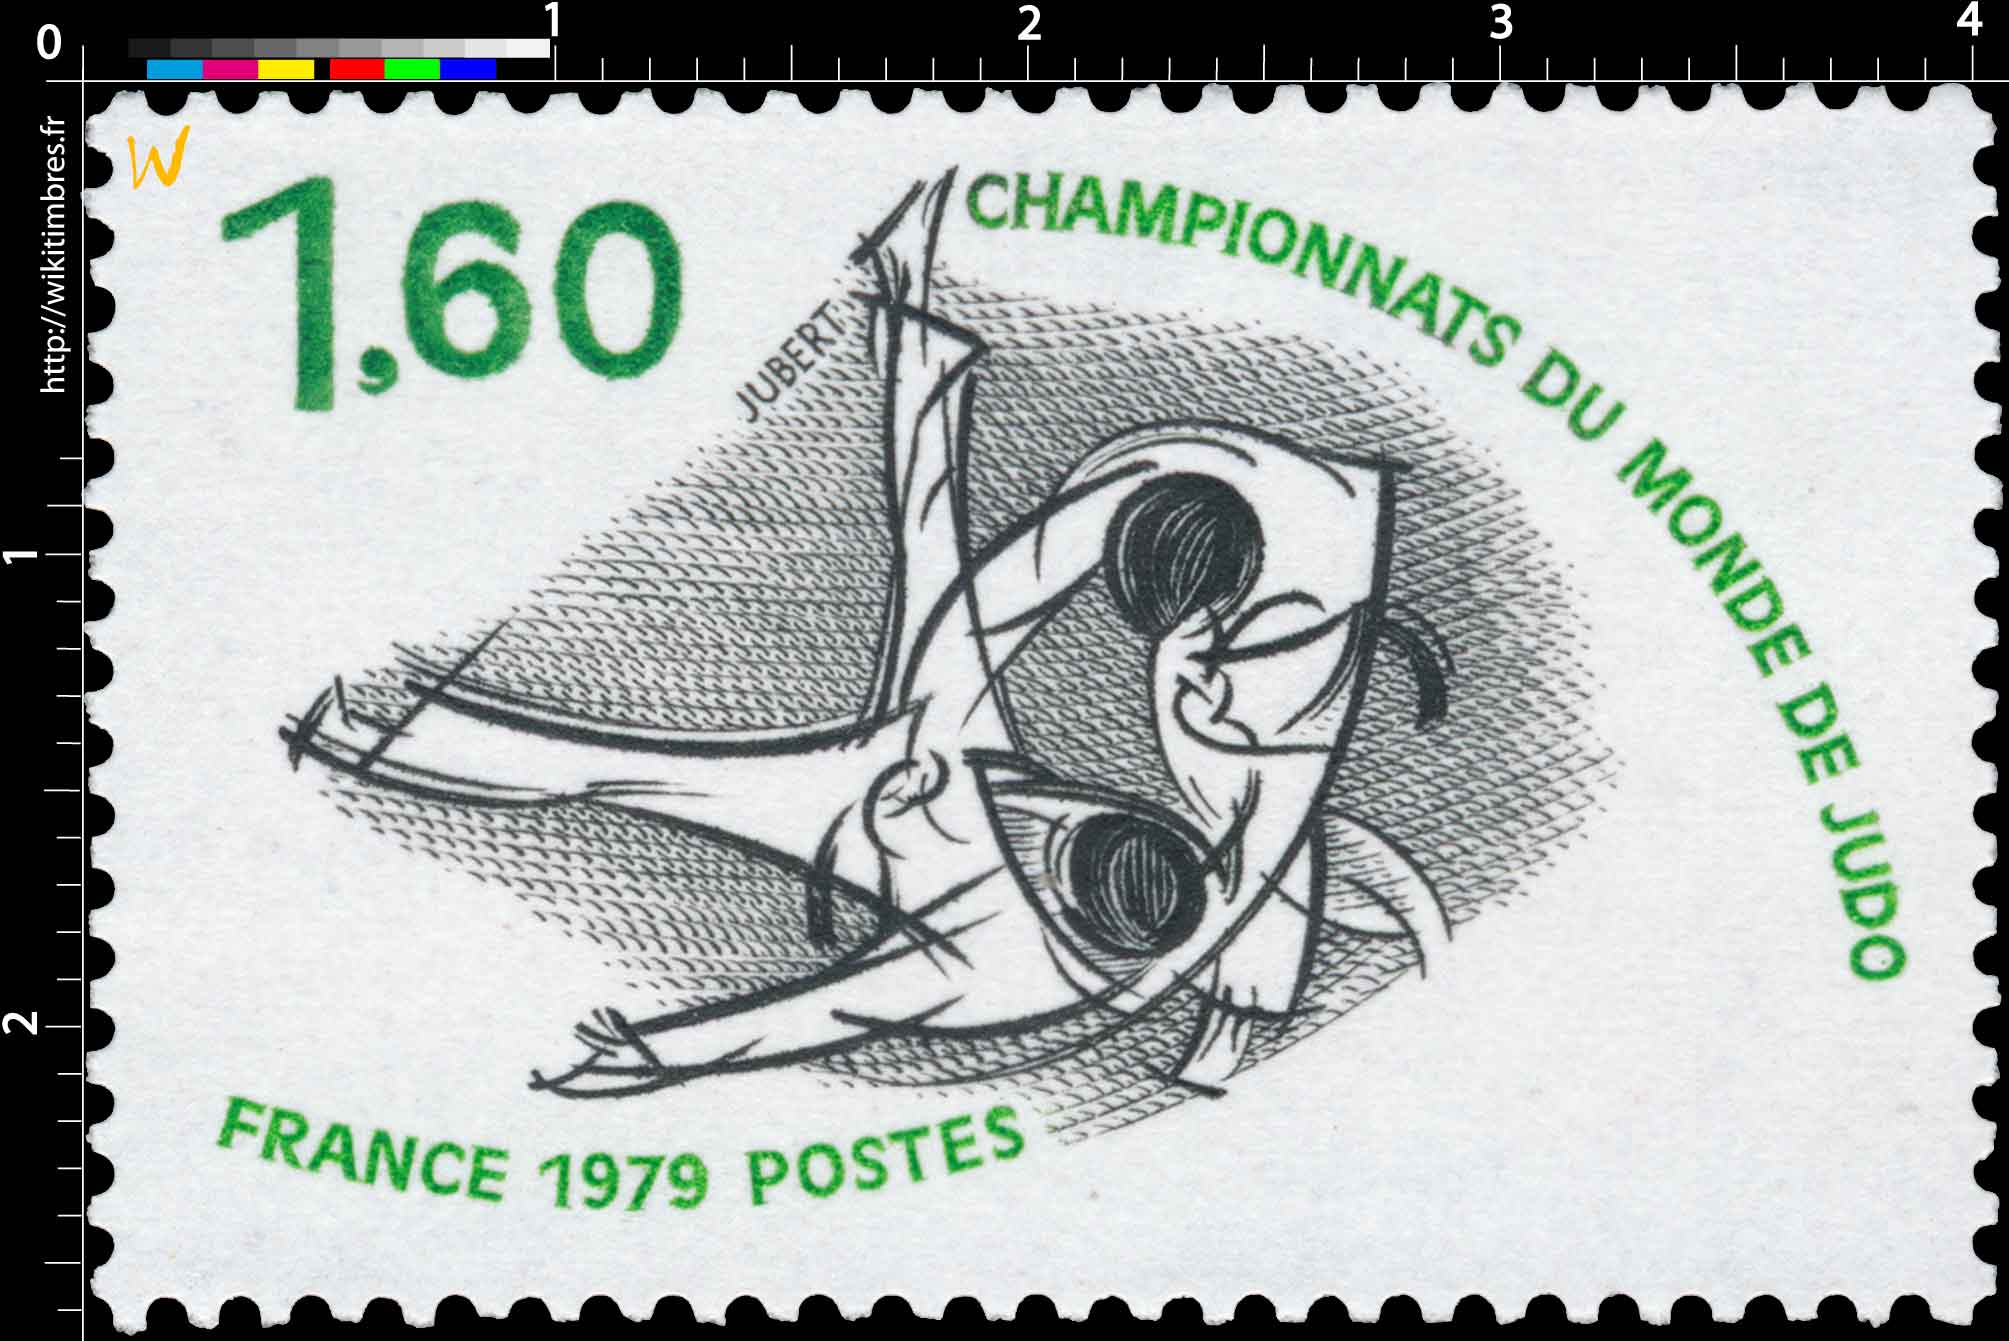 1979 CHAMPIONNATS DU MONDE DE JUDO